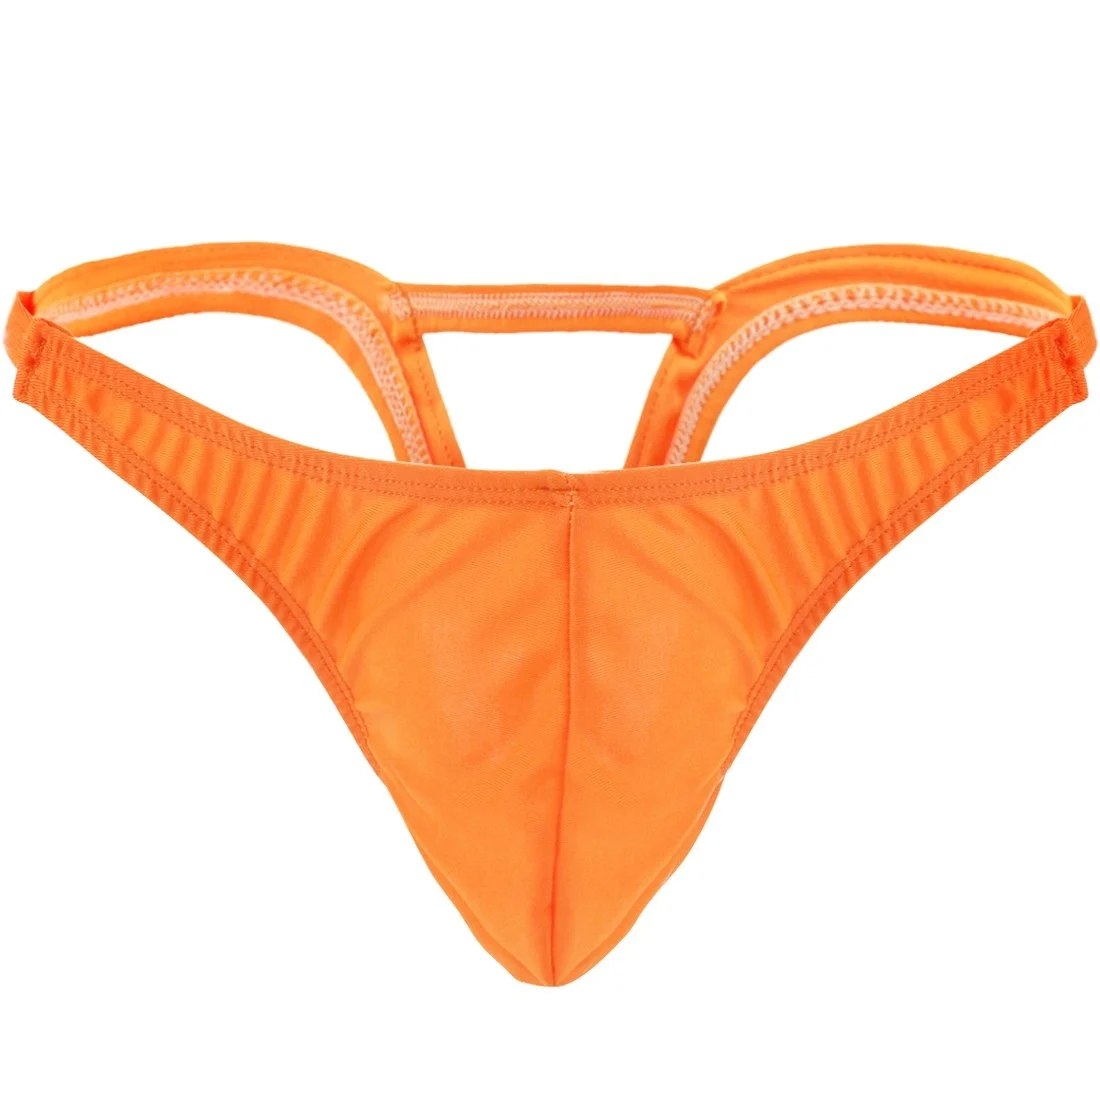 Гей купальник мужской купальник стринги трусики нижнее белье выпуклый мешочек с перевернутым треугольником сзади купальник стринги трусики - Цвет: Orange